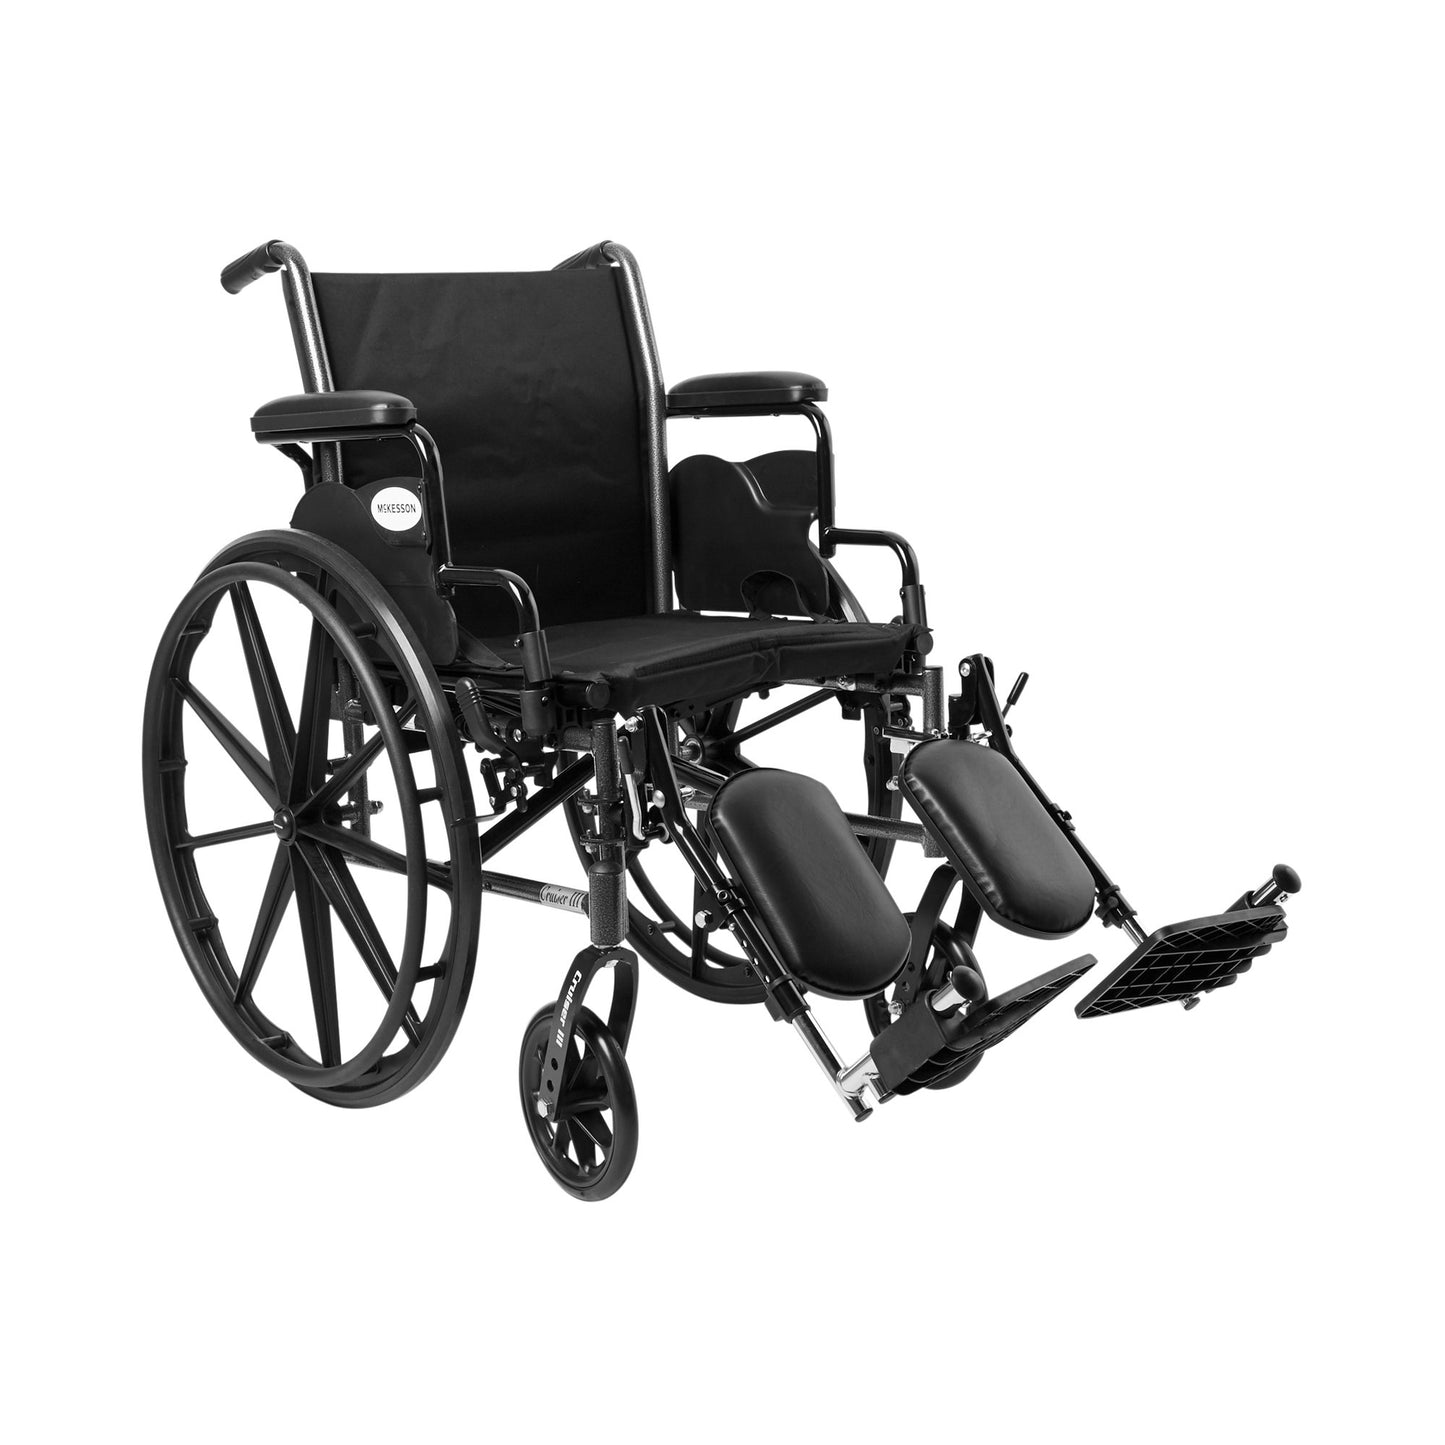 McKesson Lightweight Wheelchair, 18 Inch Seat Width, Legrest